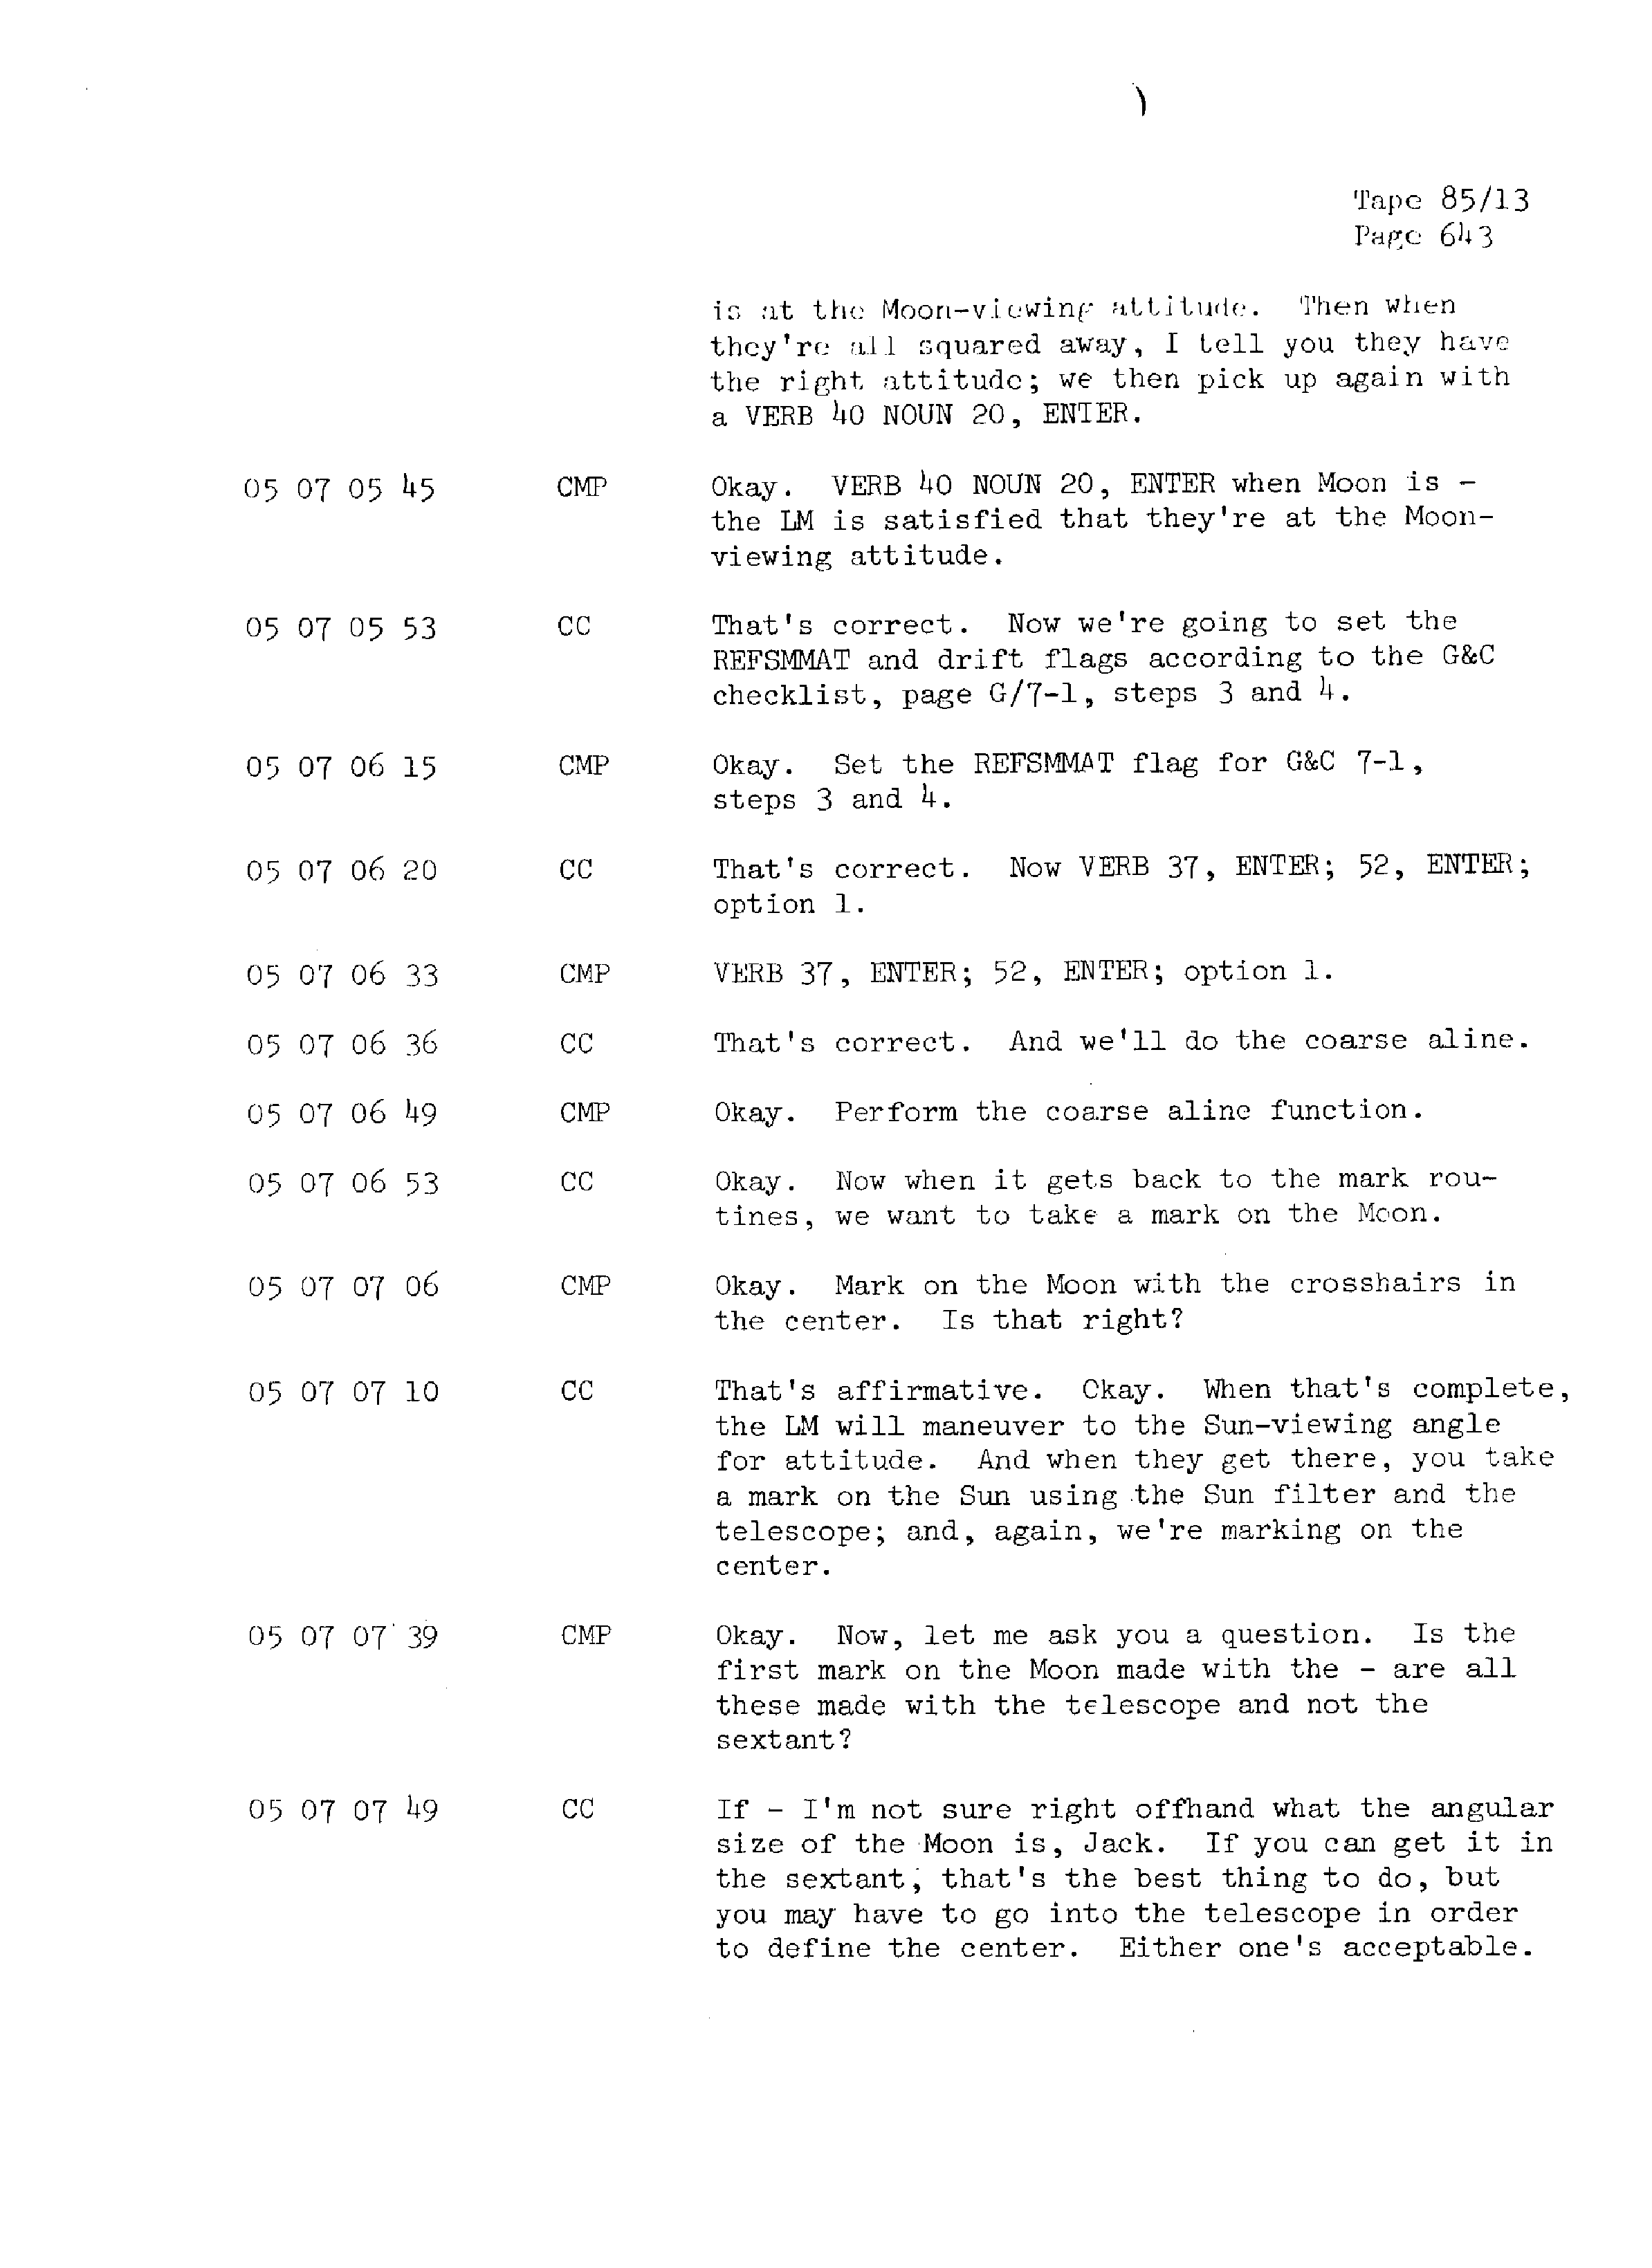 Page 650 of Apollo 13’s original transcript